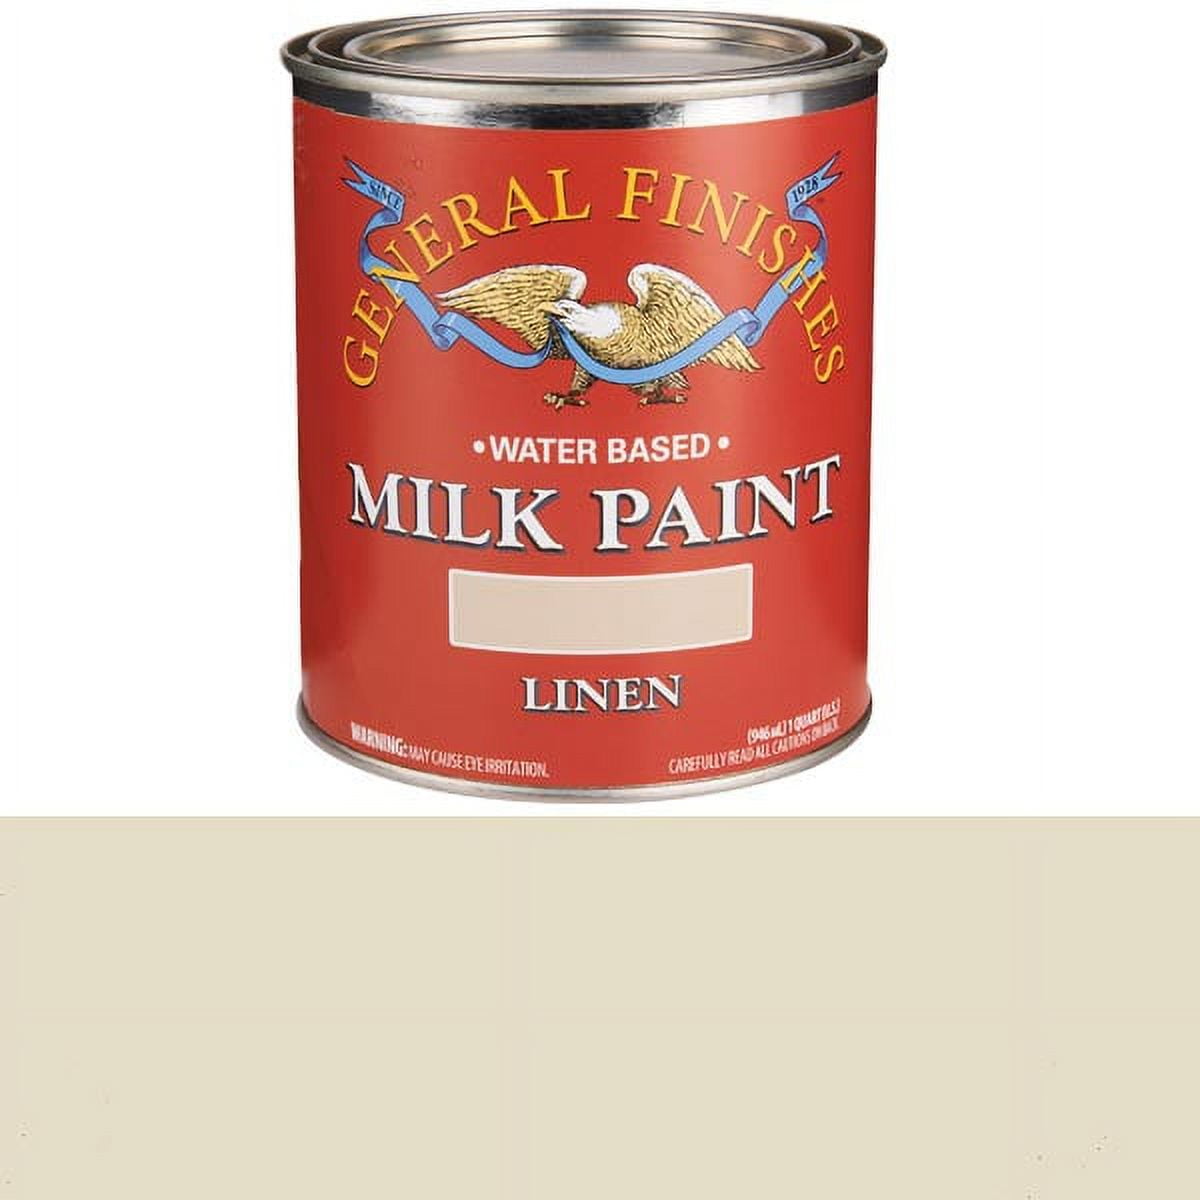 GF Milk Paint - Linen - Pint